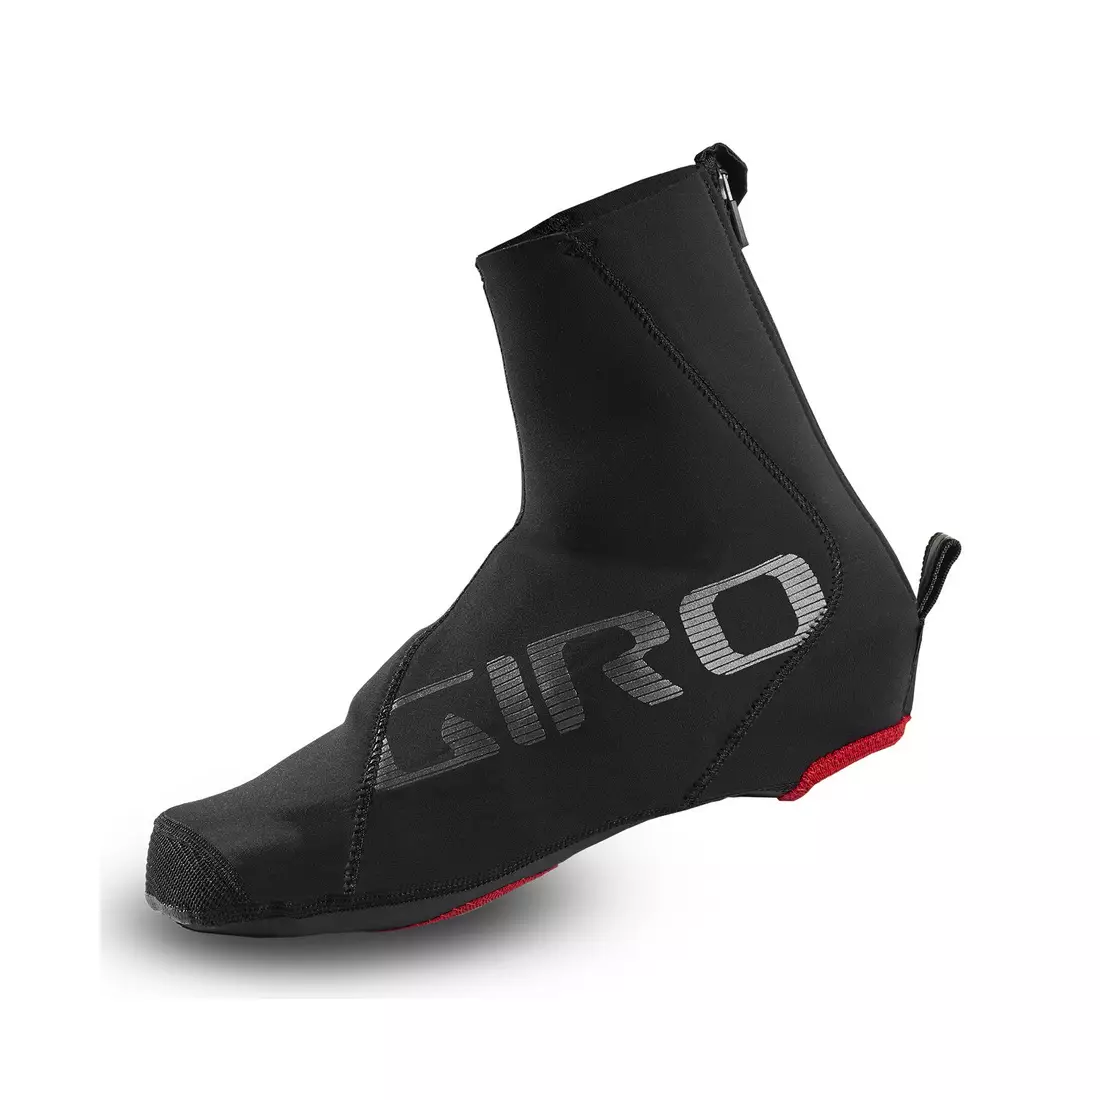 GIRO Návleky na cyklistické topánky PROOF WINTER SHOE CVR black GR-7111989